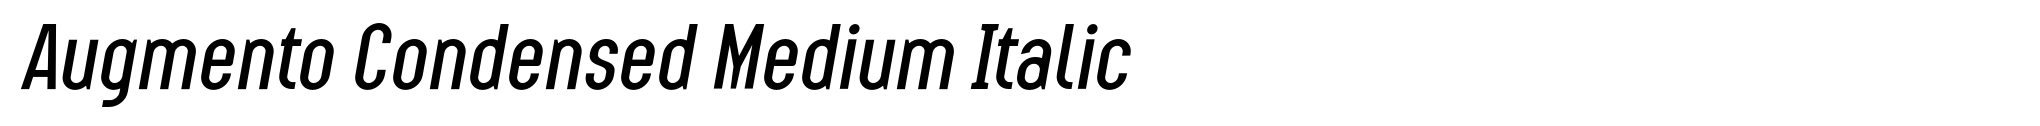 Augmento Condensed Medium Italic image